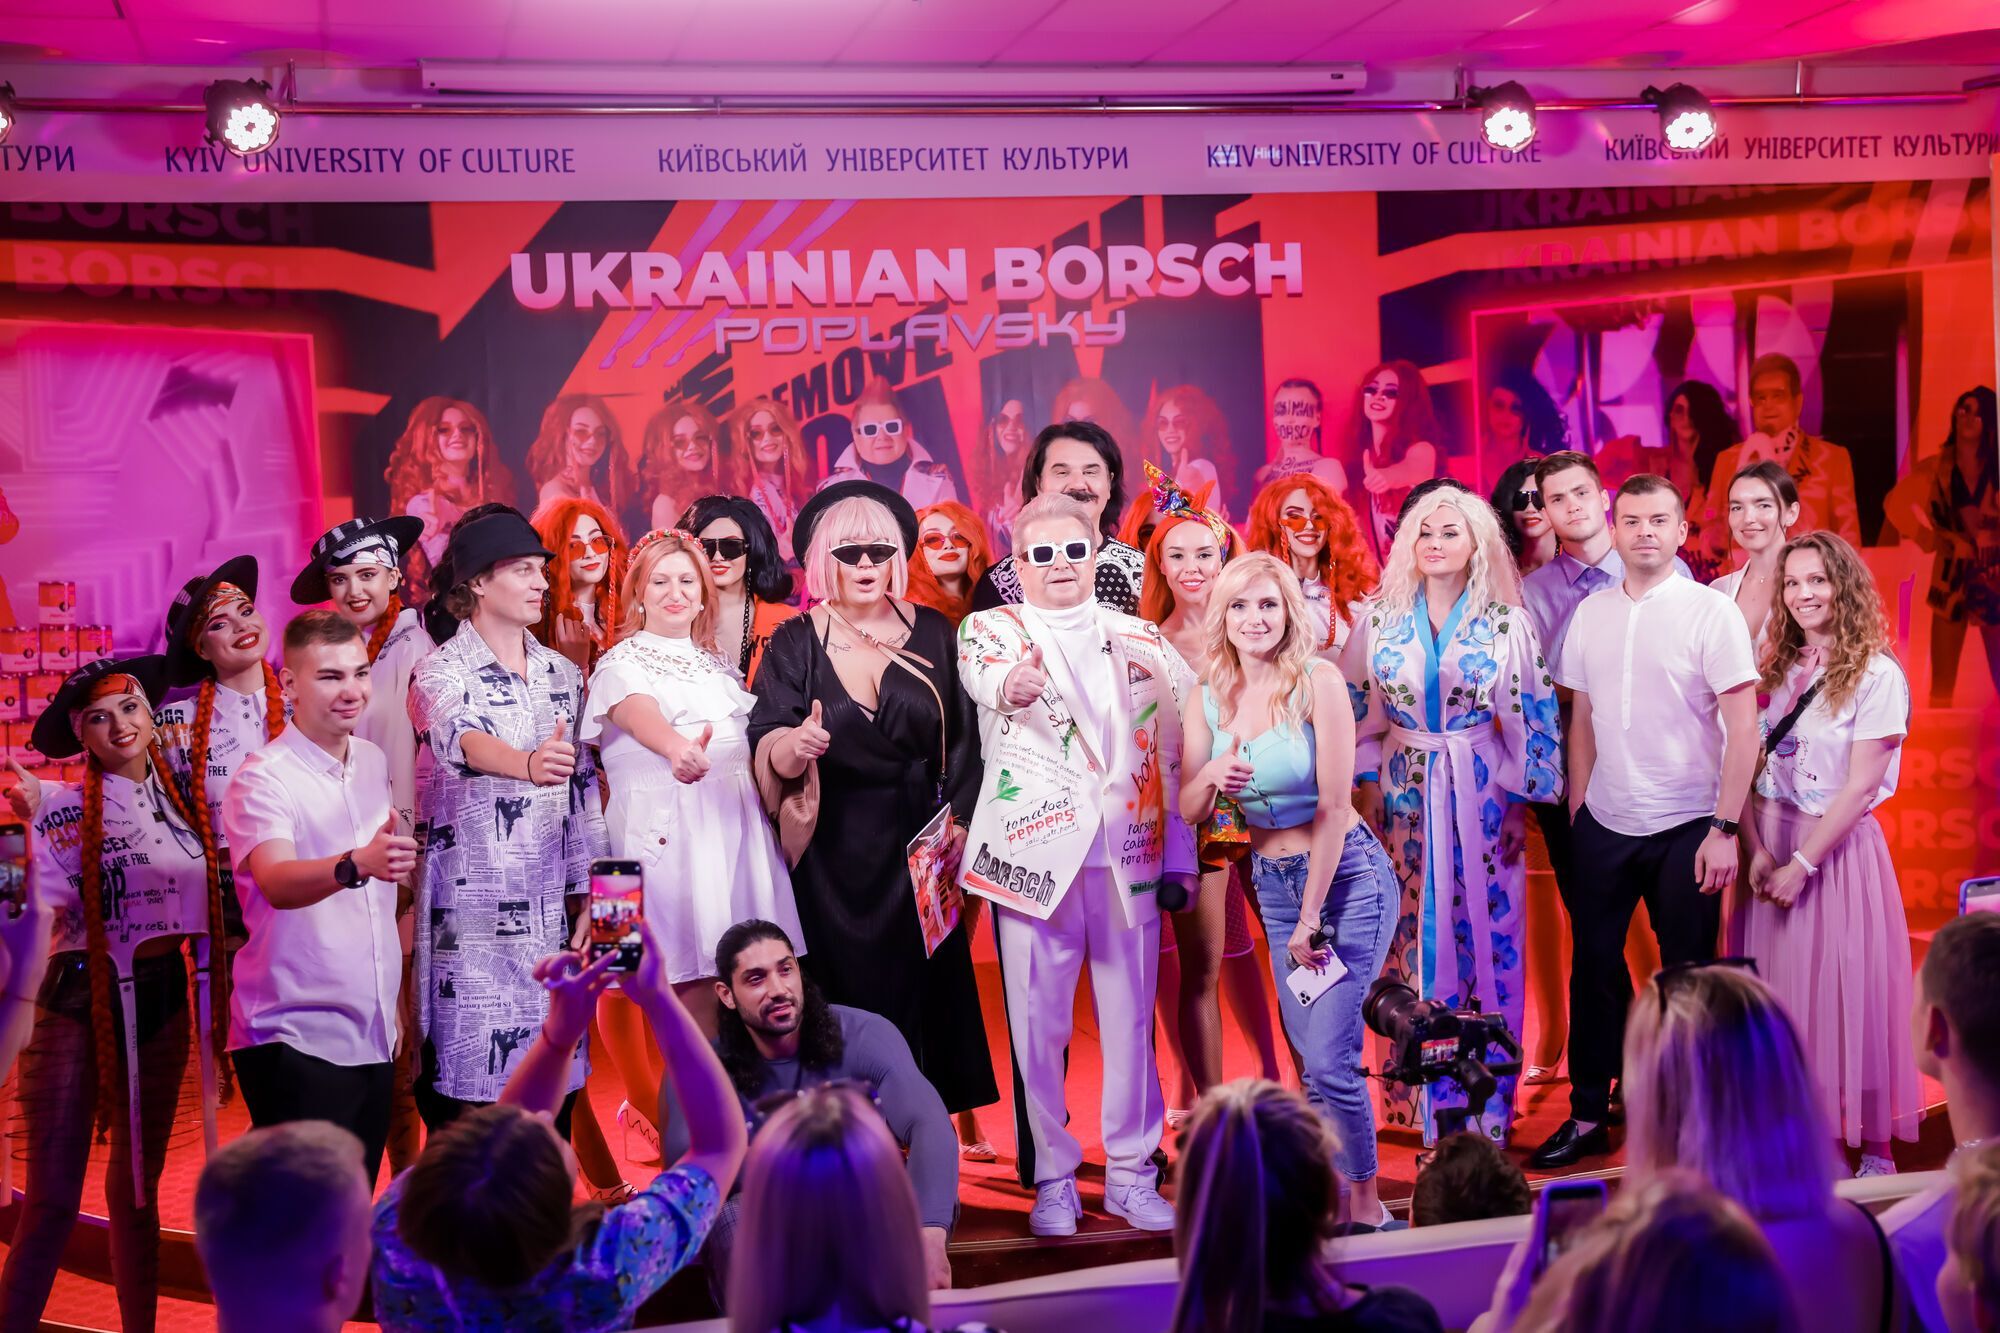 Поплавский представил клип на песню "Український борщ" и зачитал рэп